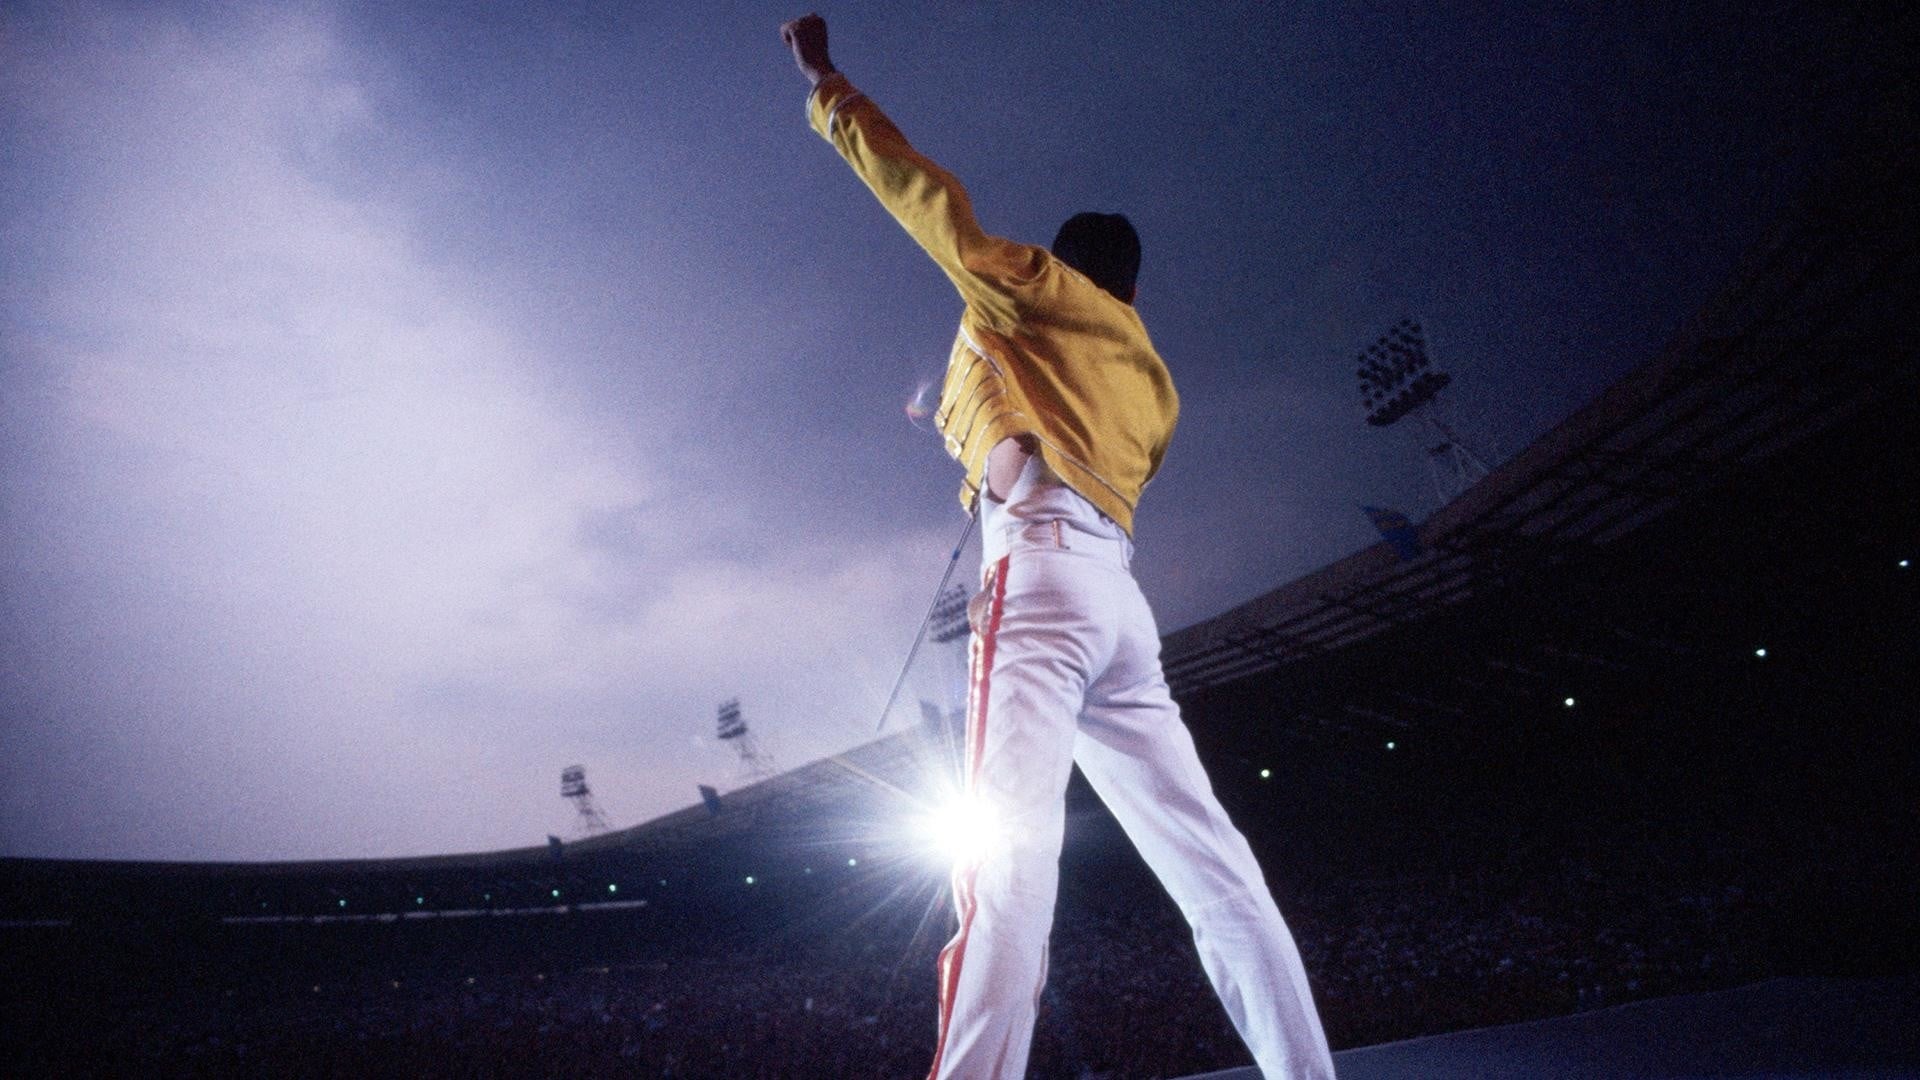 Freddie Mercury: The Great Pretender (2012)